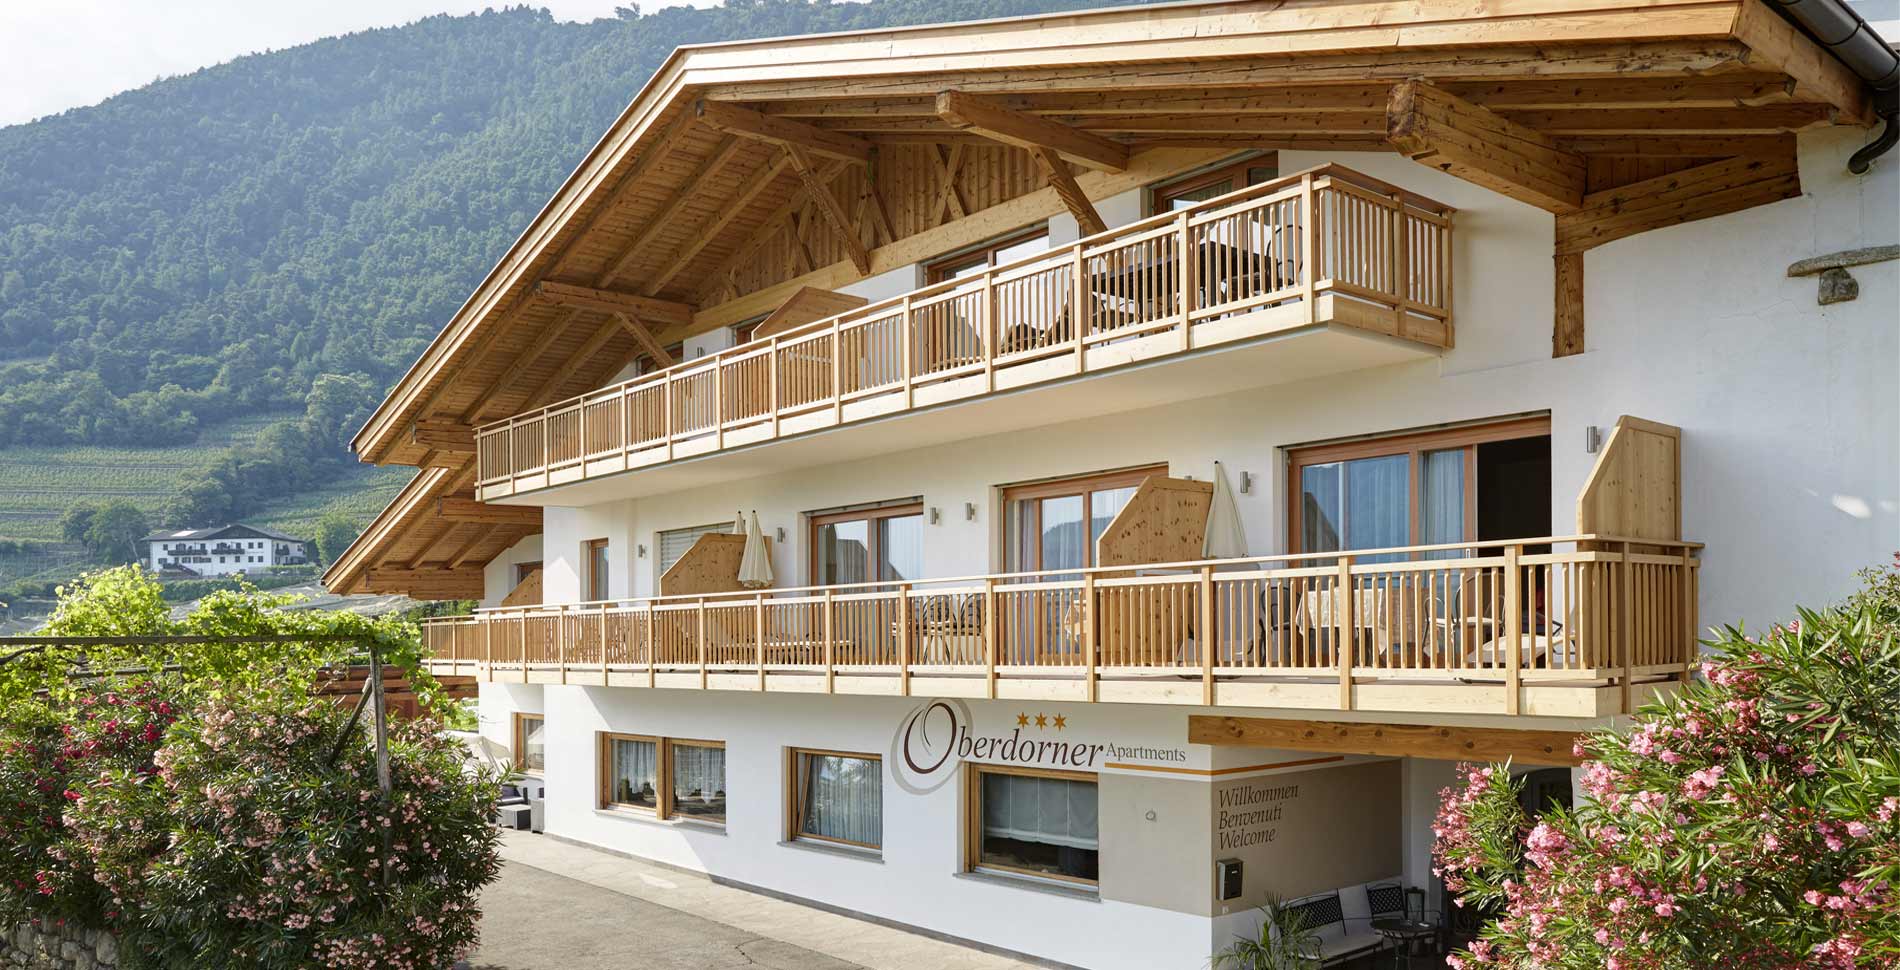 Oberdorner Ferienwohnungen in Algund, Südtirol